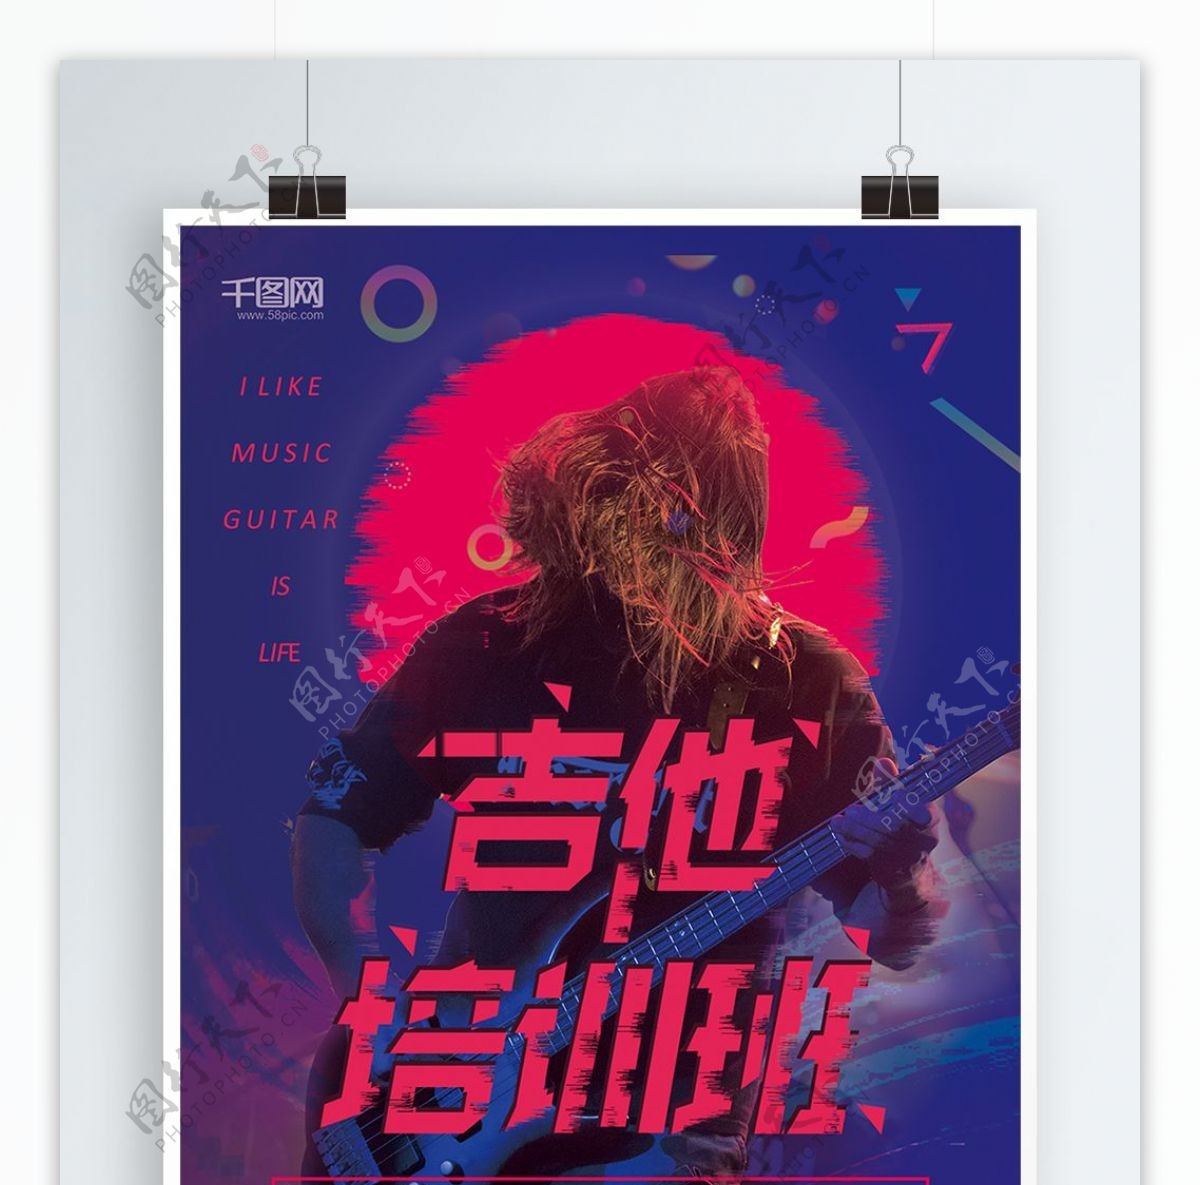 紫色炫酷吉他培训班艺术招生促销海报